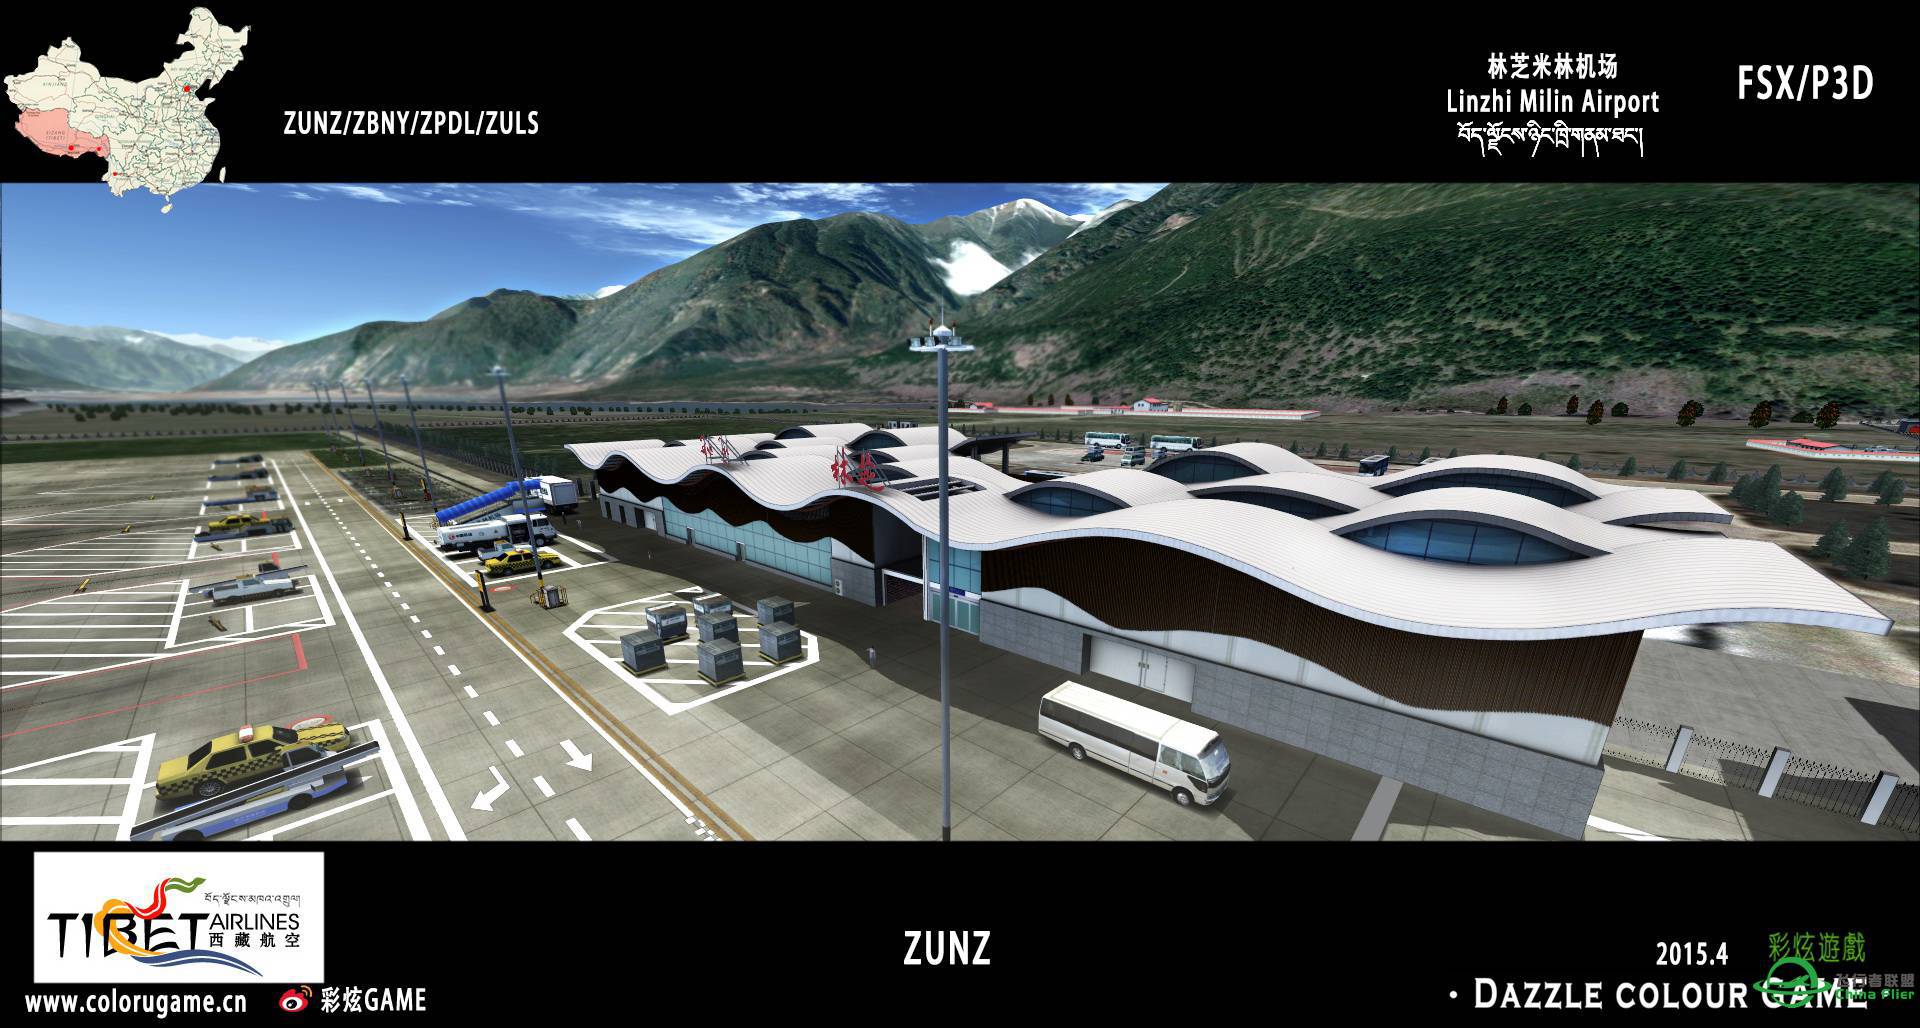 彩炫地景：林芝米林机场（ZUNZ）正式发布！-2762 